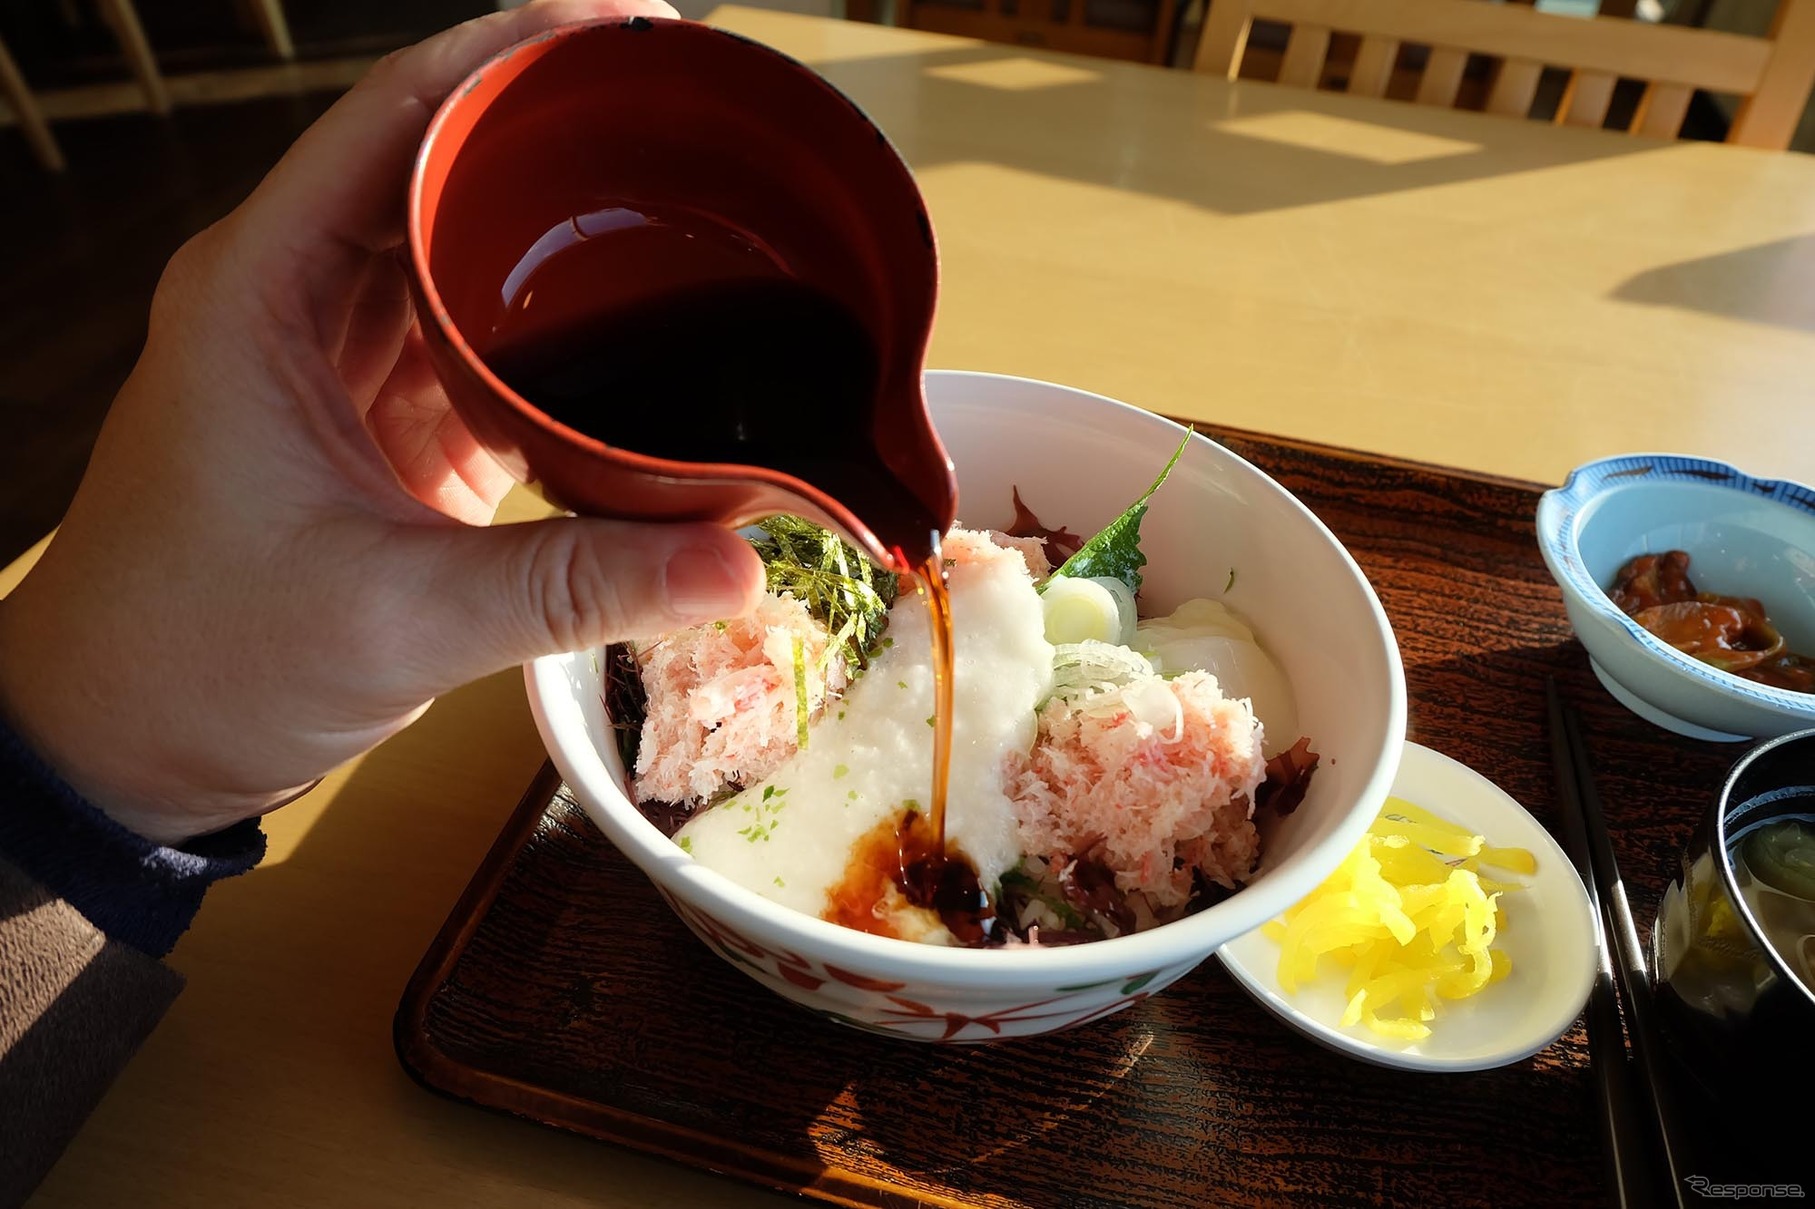 鳥取大砂丘の食堂にて若松葉カニ丼を食す。美味であった。